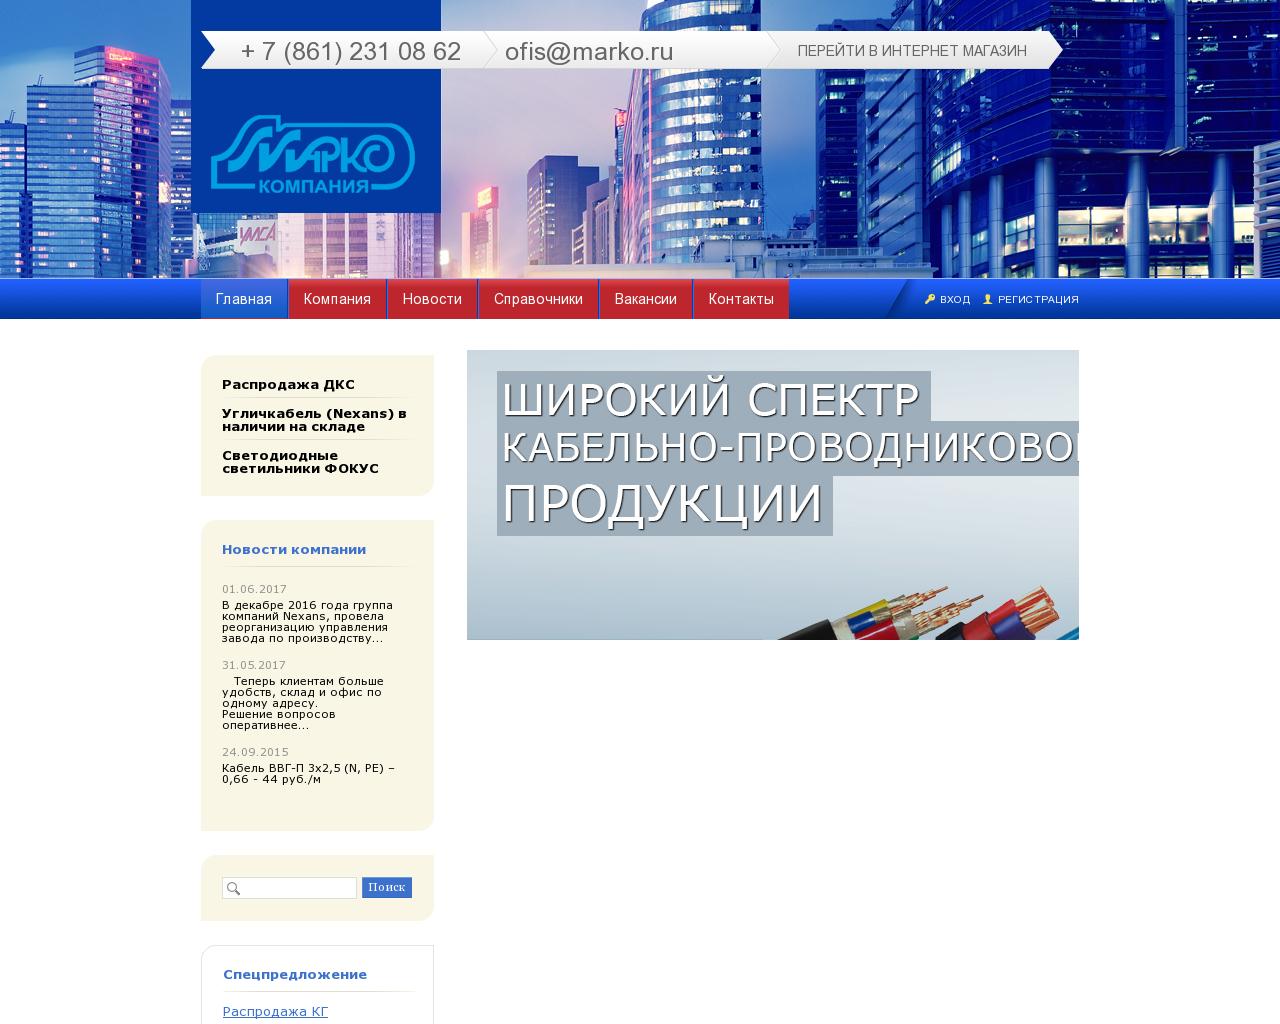 Изображение сайта marko.ru в разрешении 1280x1024